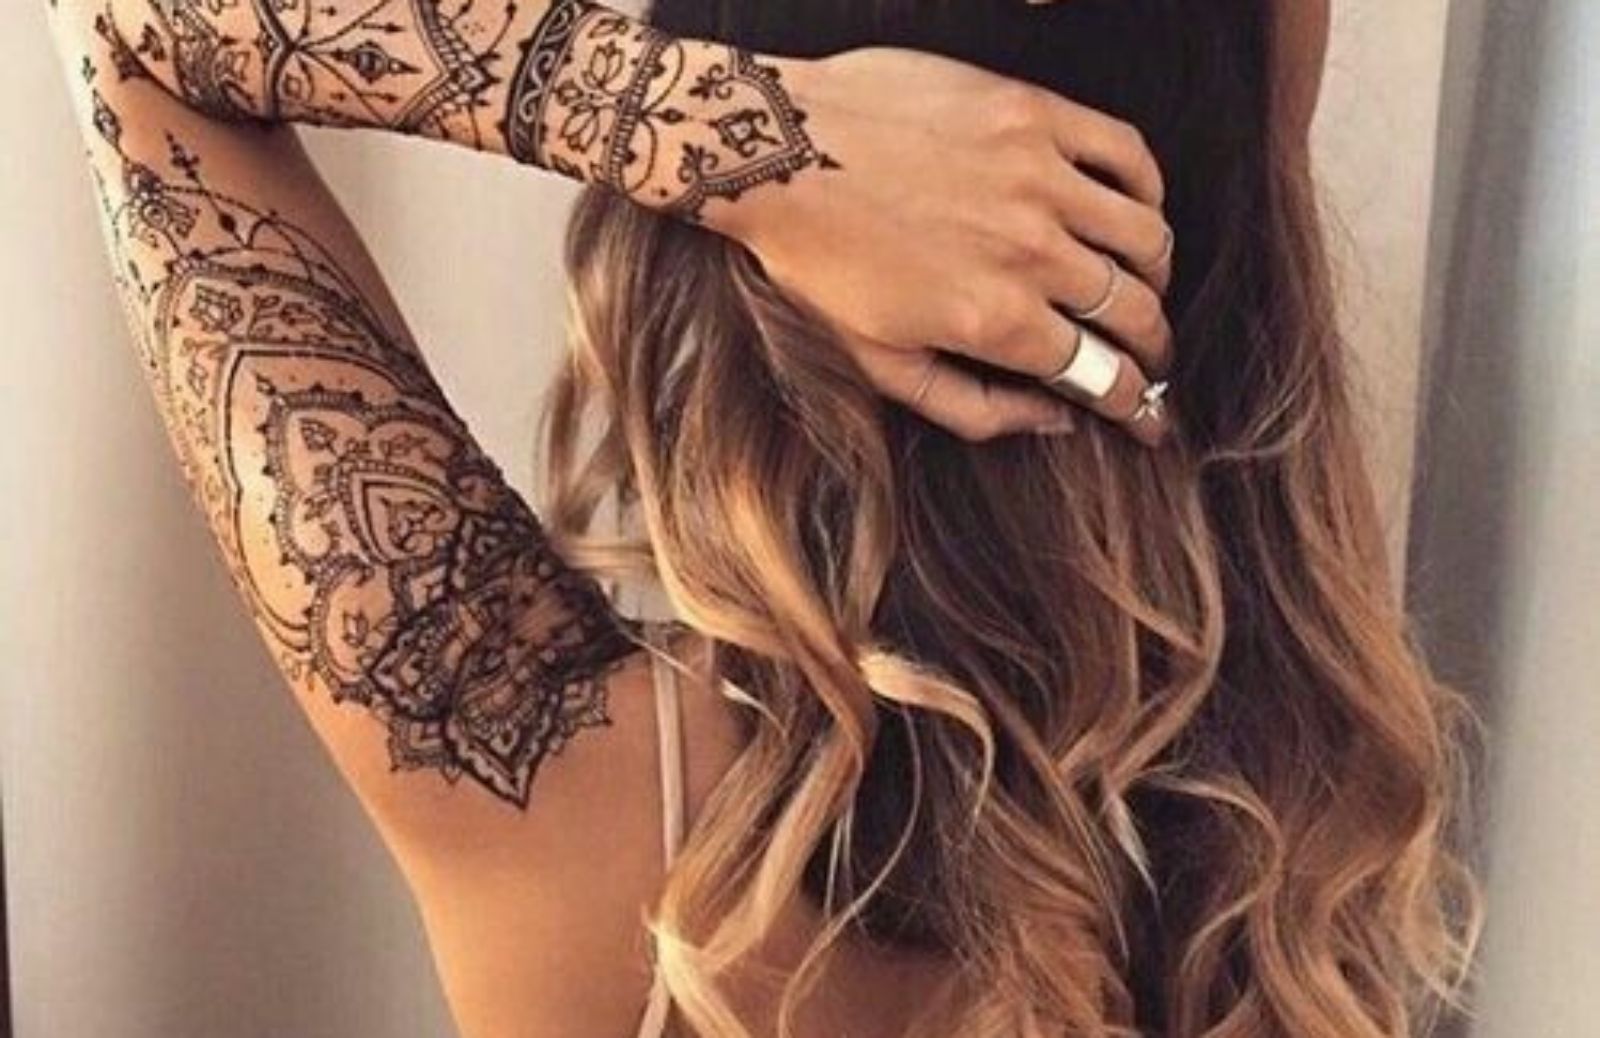 Tatuaggi all'henné: 5 idee per decorare il corpo